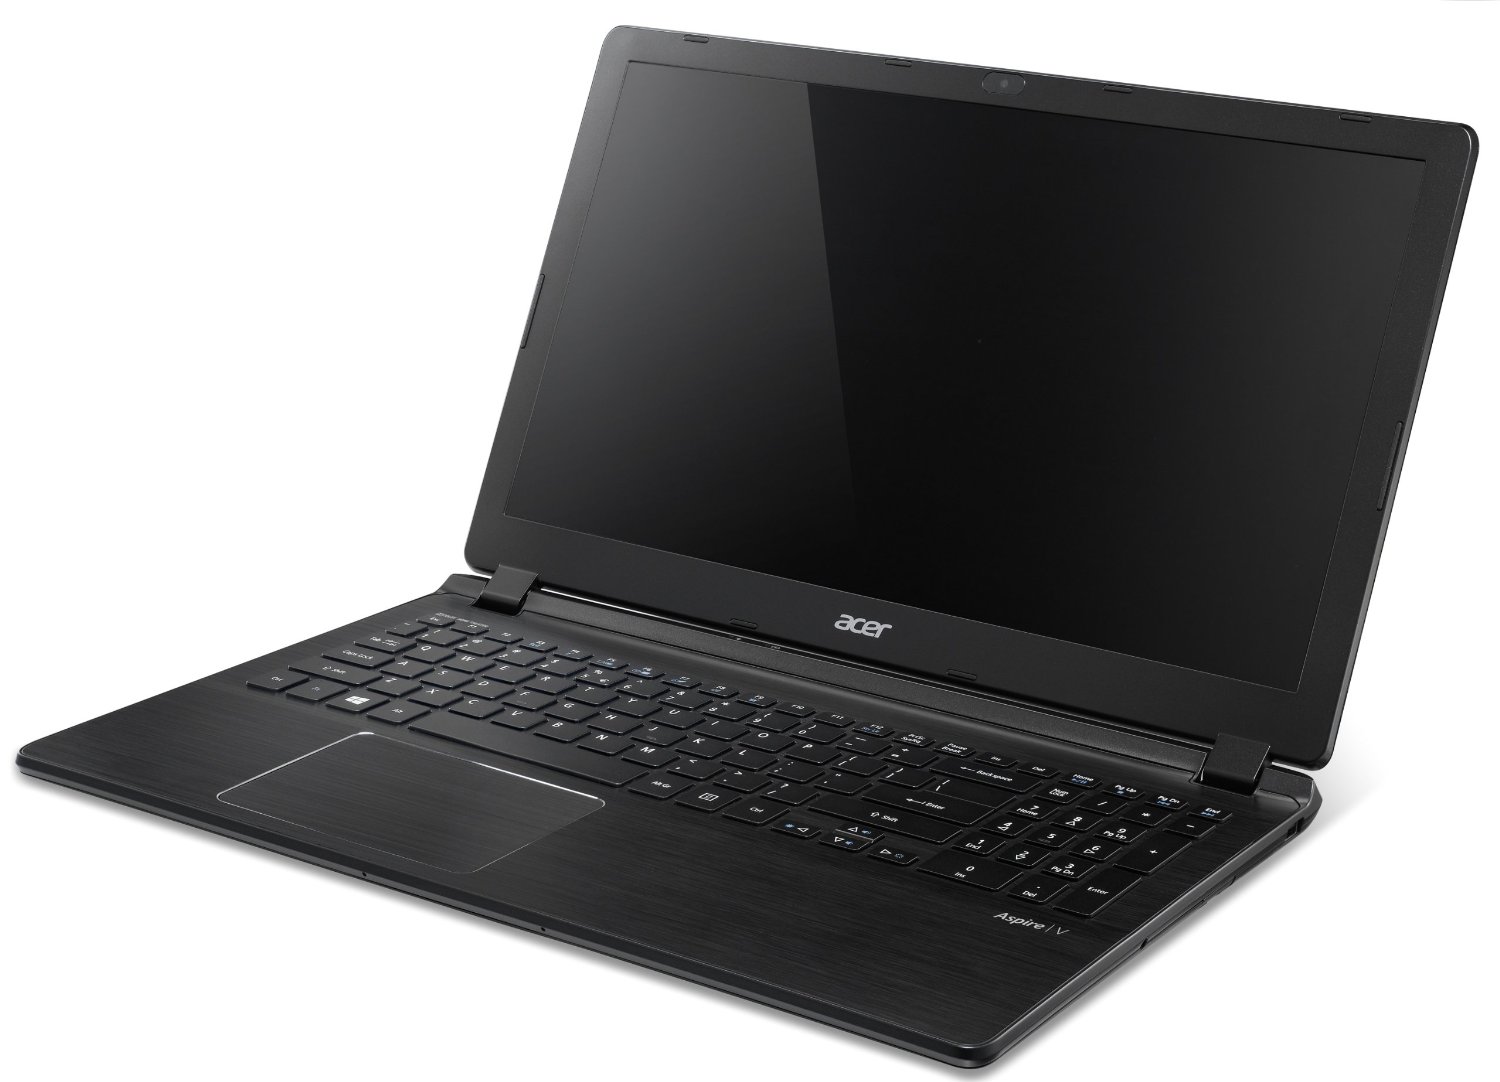 Acer Aspire V5-573G-54208G50akk - Notebookcheck.net External Reviews